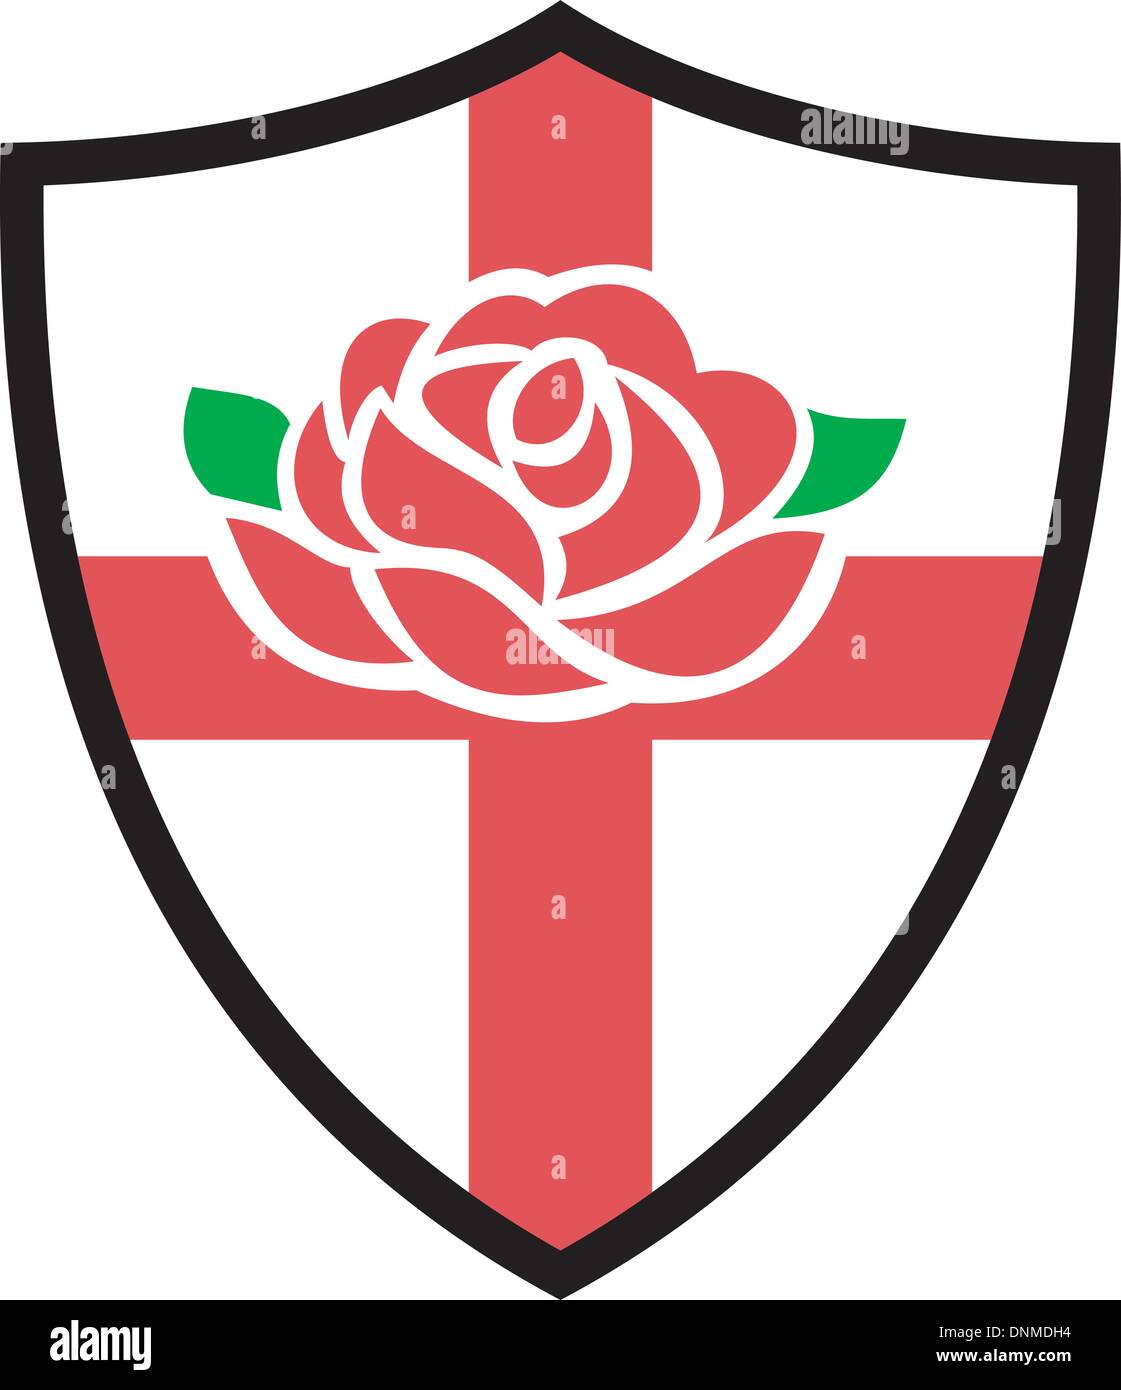 Abbildung von einem roten englischen rose mit Flagge von England innen Schild Stock Vektor